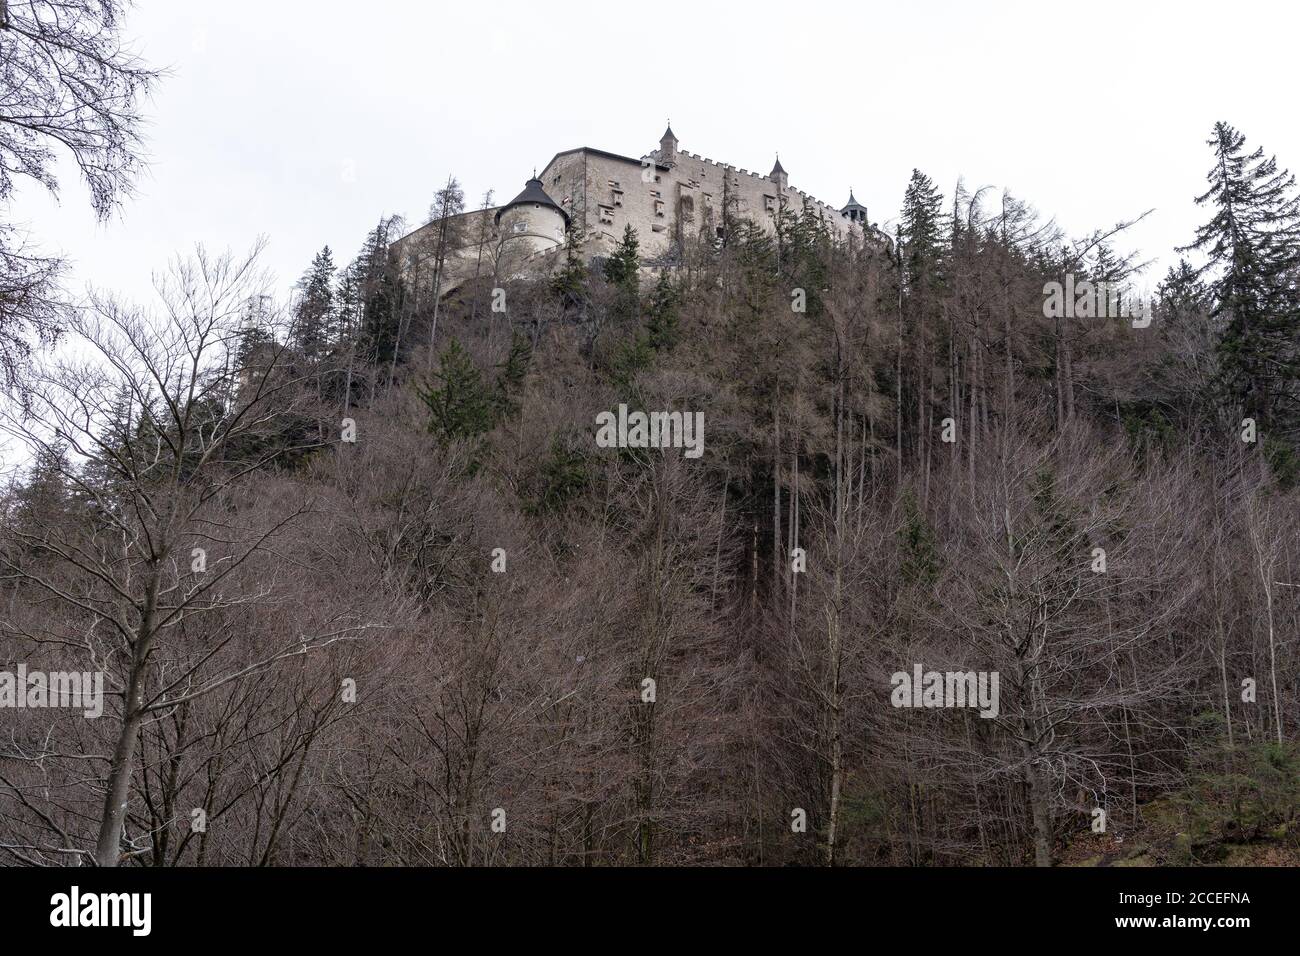 Europe, Austria, Salzburg State, Werfen, view of Hohenwerfen Castle in Salzburg State Stock Photo